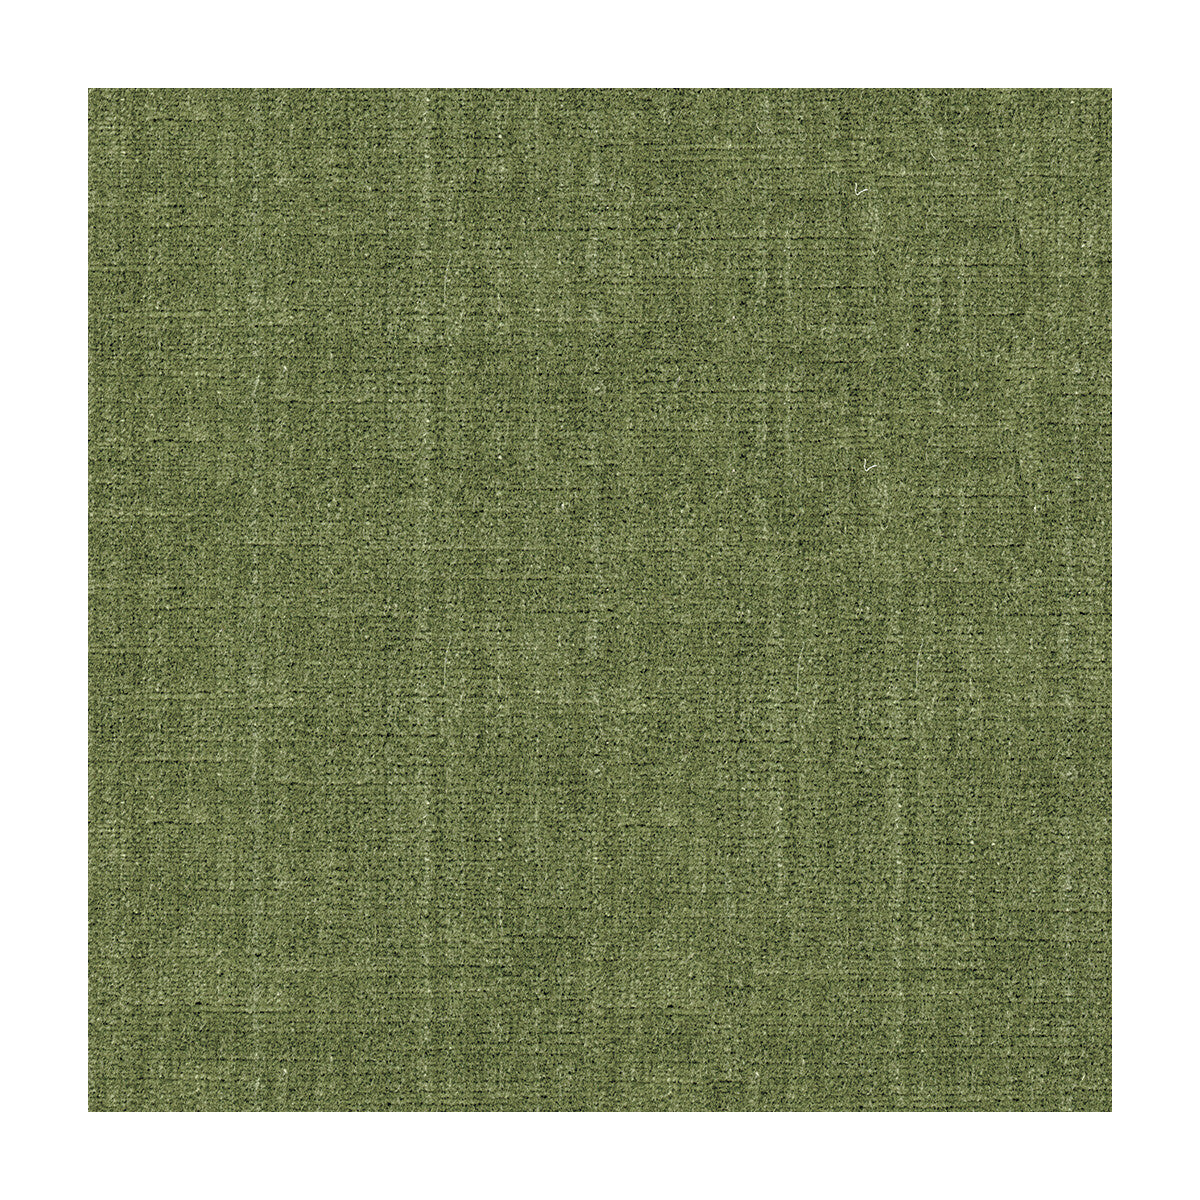 Kravet Design fabric in 29429-130 color - pattern 29429.130.0 - by Kravet Design